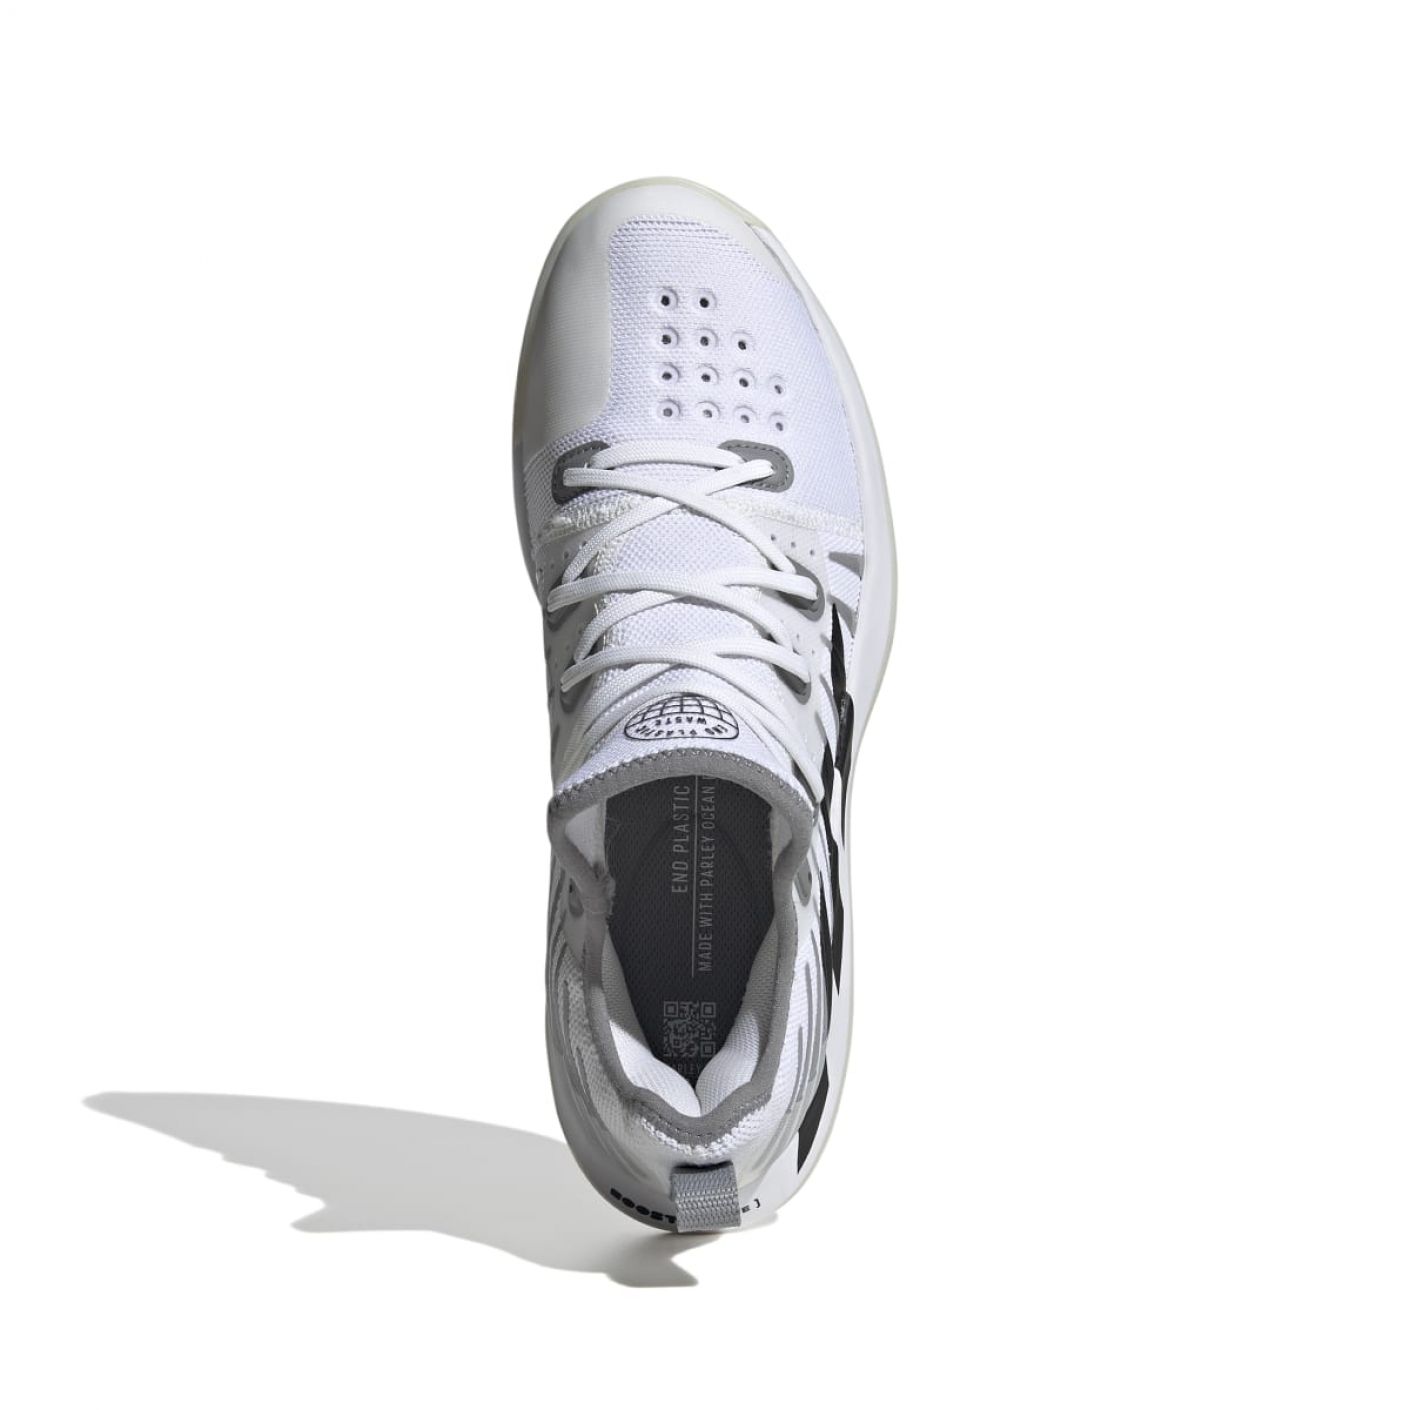 Adidas Stabil Next Gen 2.0 M Ftwr White